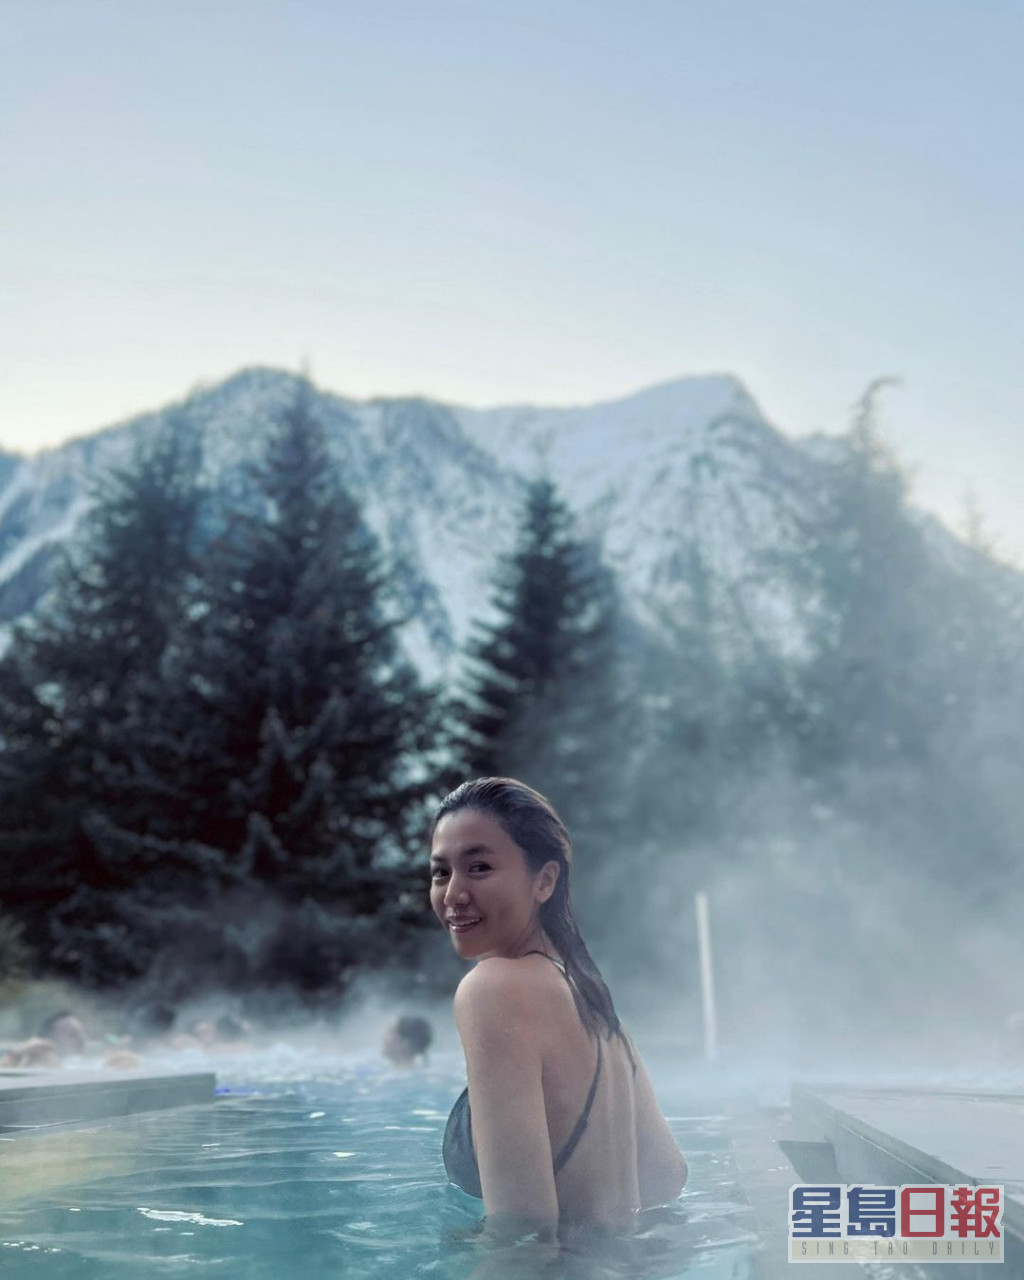 杨偲泳露纤腰晒美背于冰天雪地下浸温泉。